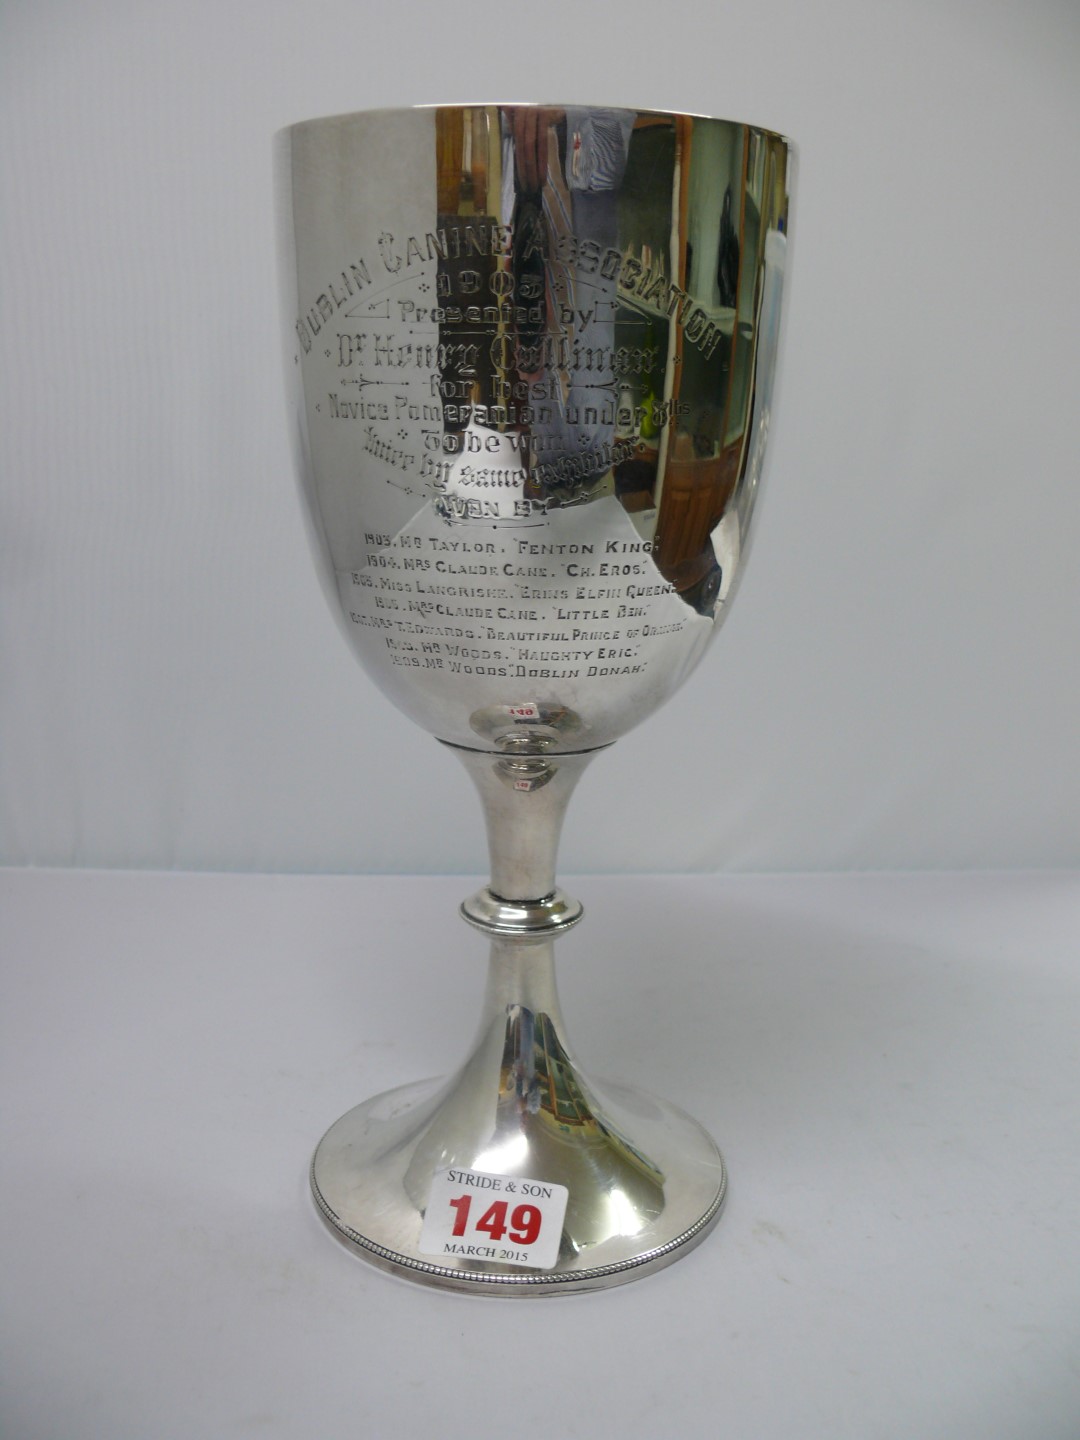 An Edwardian silver trophy cup, by Harri